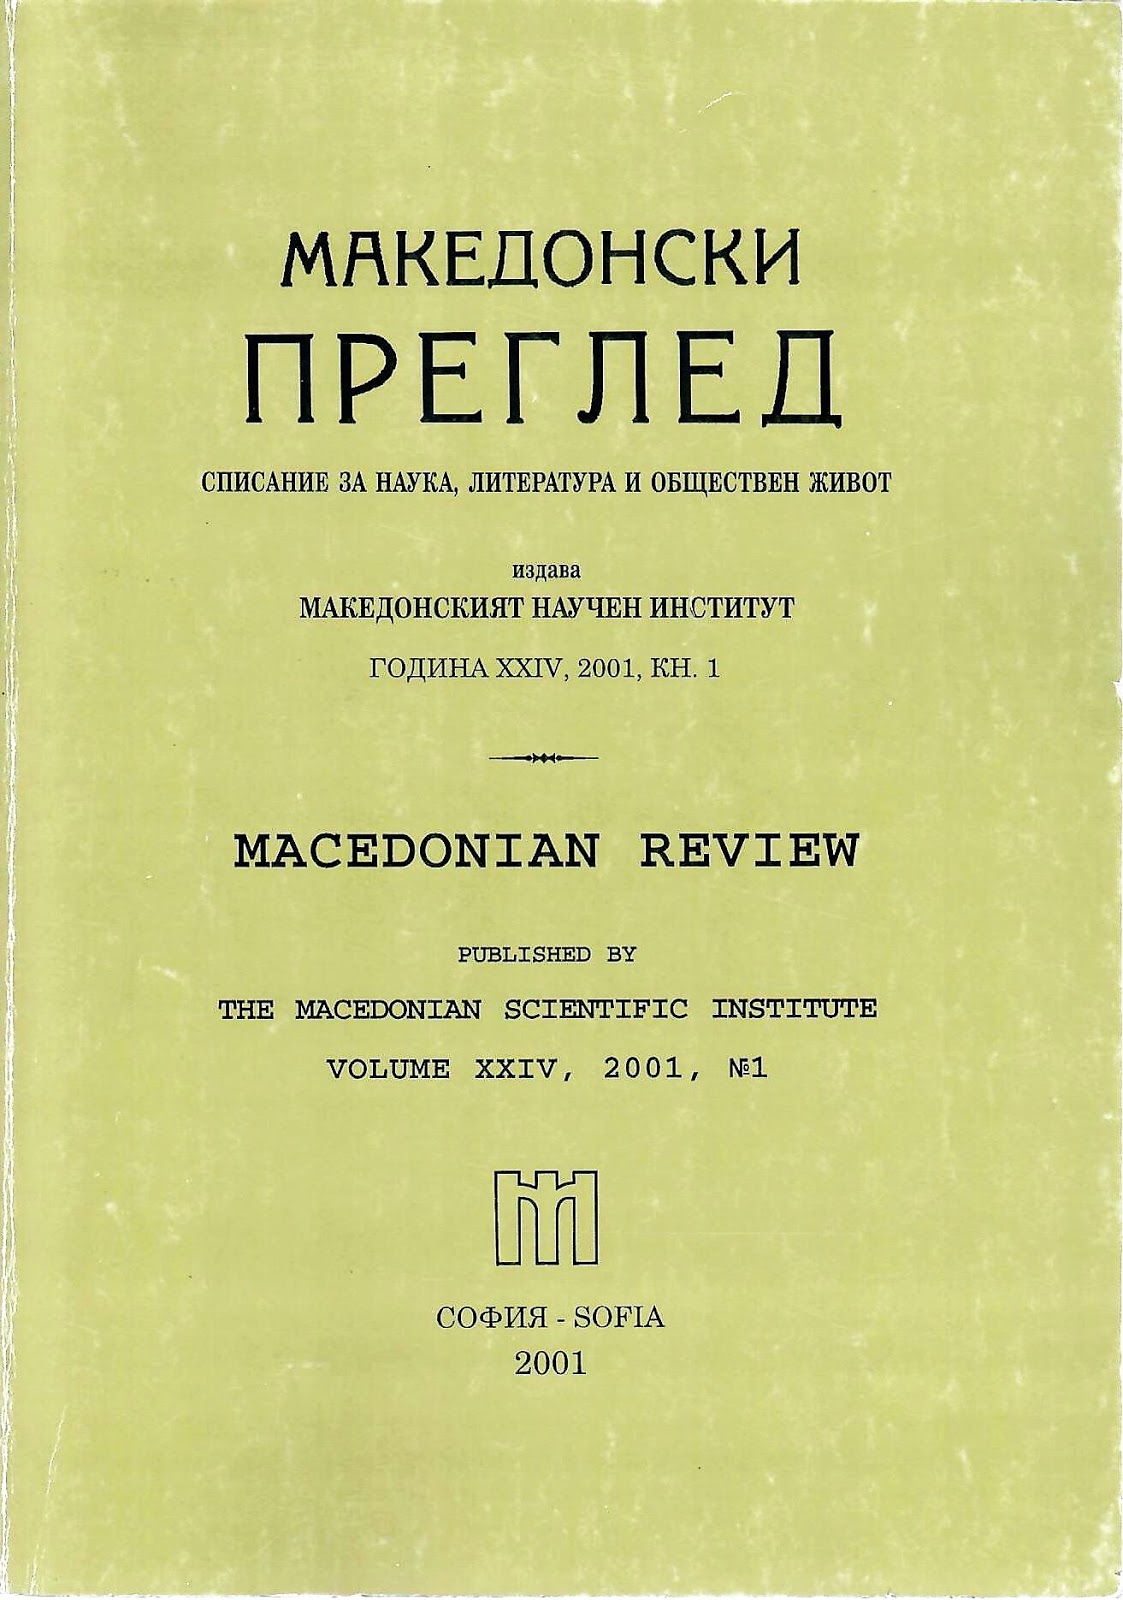 Дейността на македонската парламентарна група в XXII и XXIII обикновено народно събрание (1927-1934 г.)